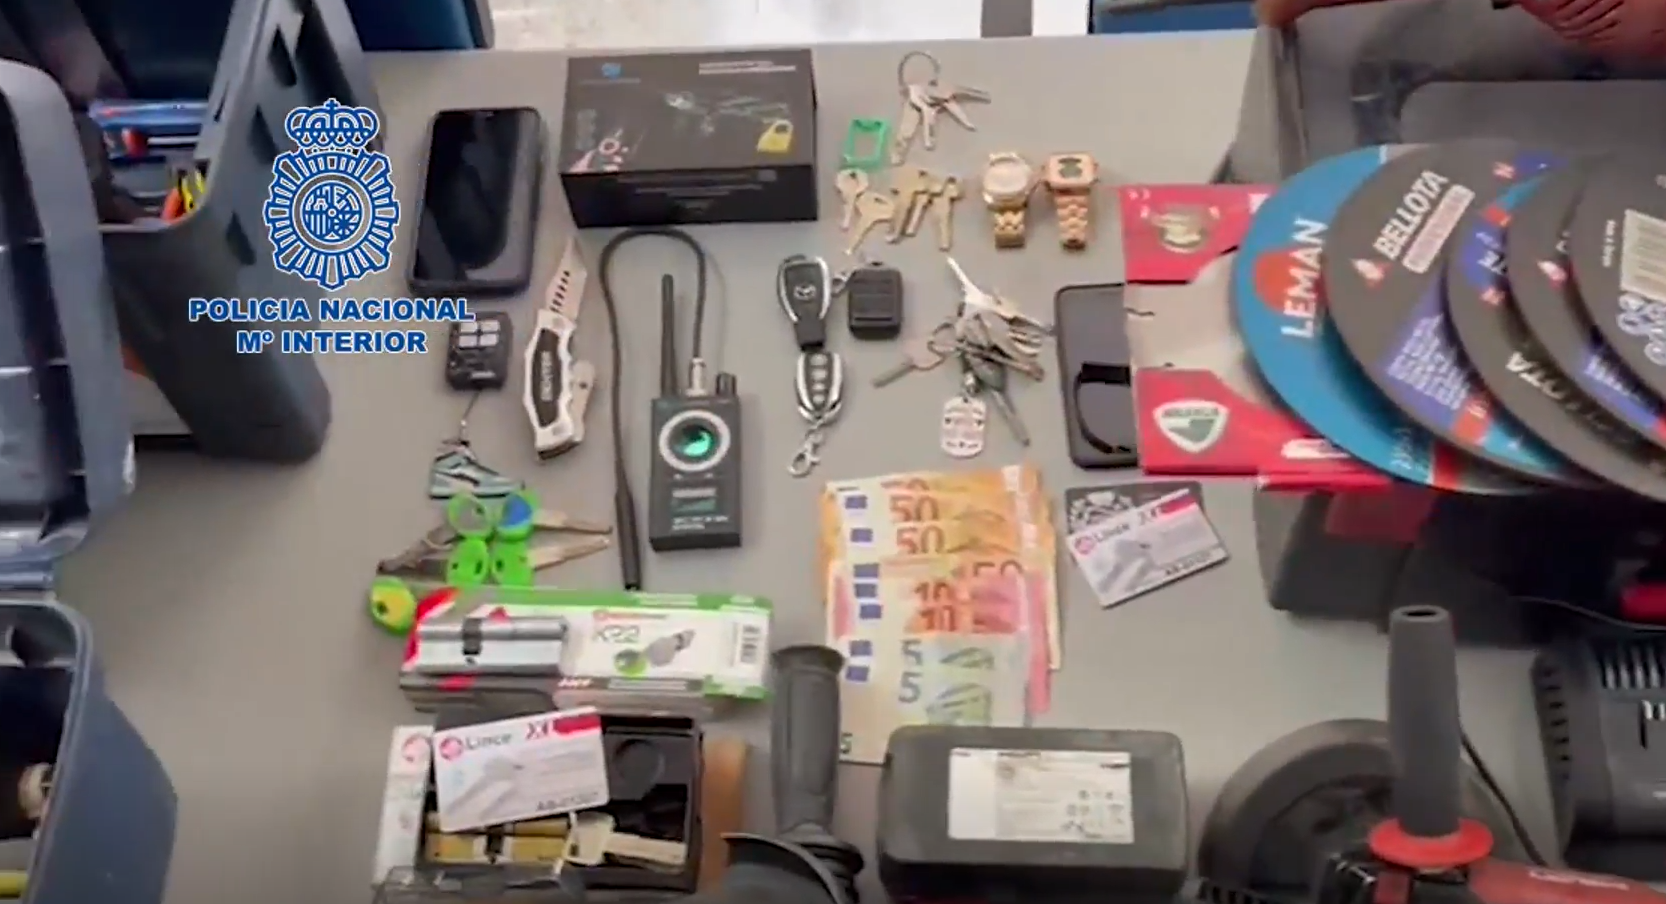 Imagen de algunas de las herramientas utilizadas y de los objetos robados por la banda dedicada a robar en viviendas en Jerez, Sevilla y Marbella.